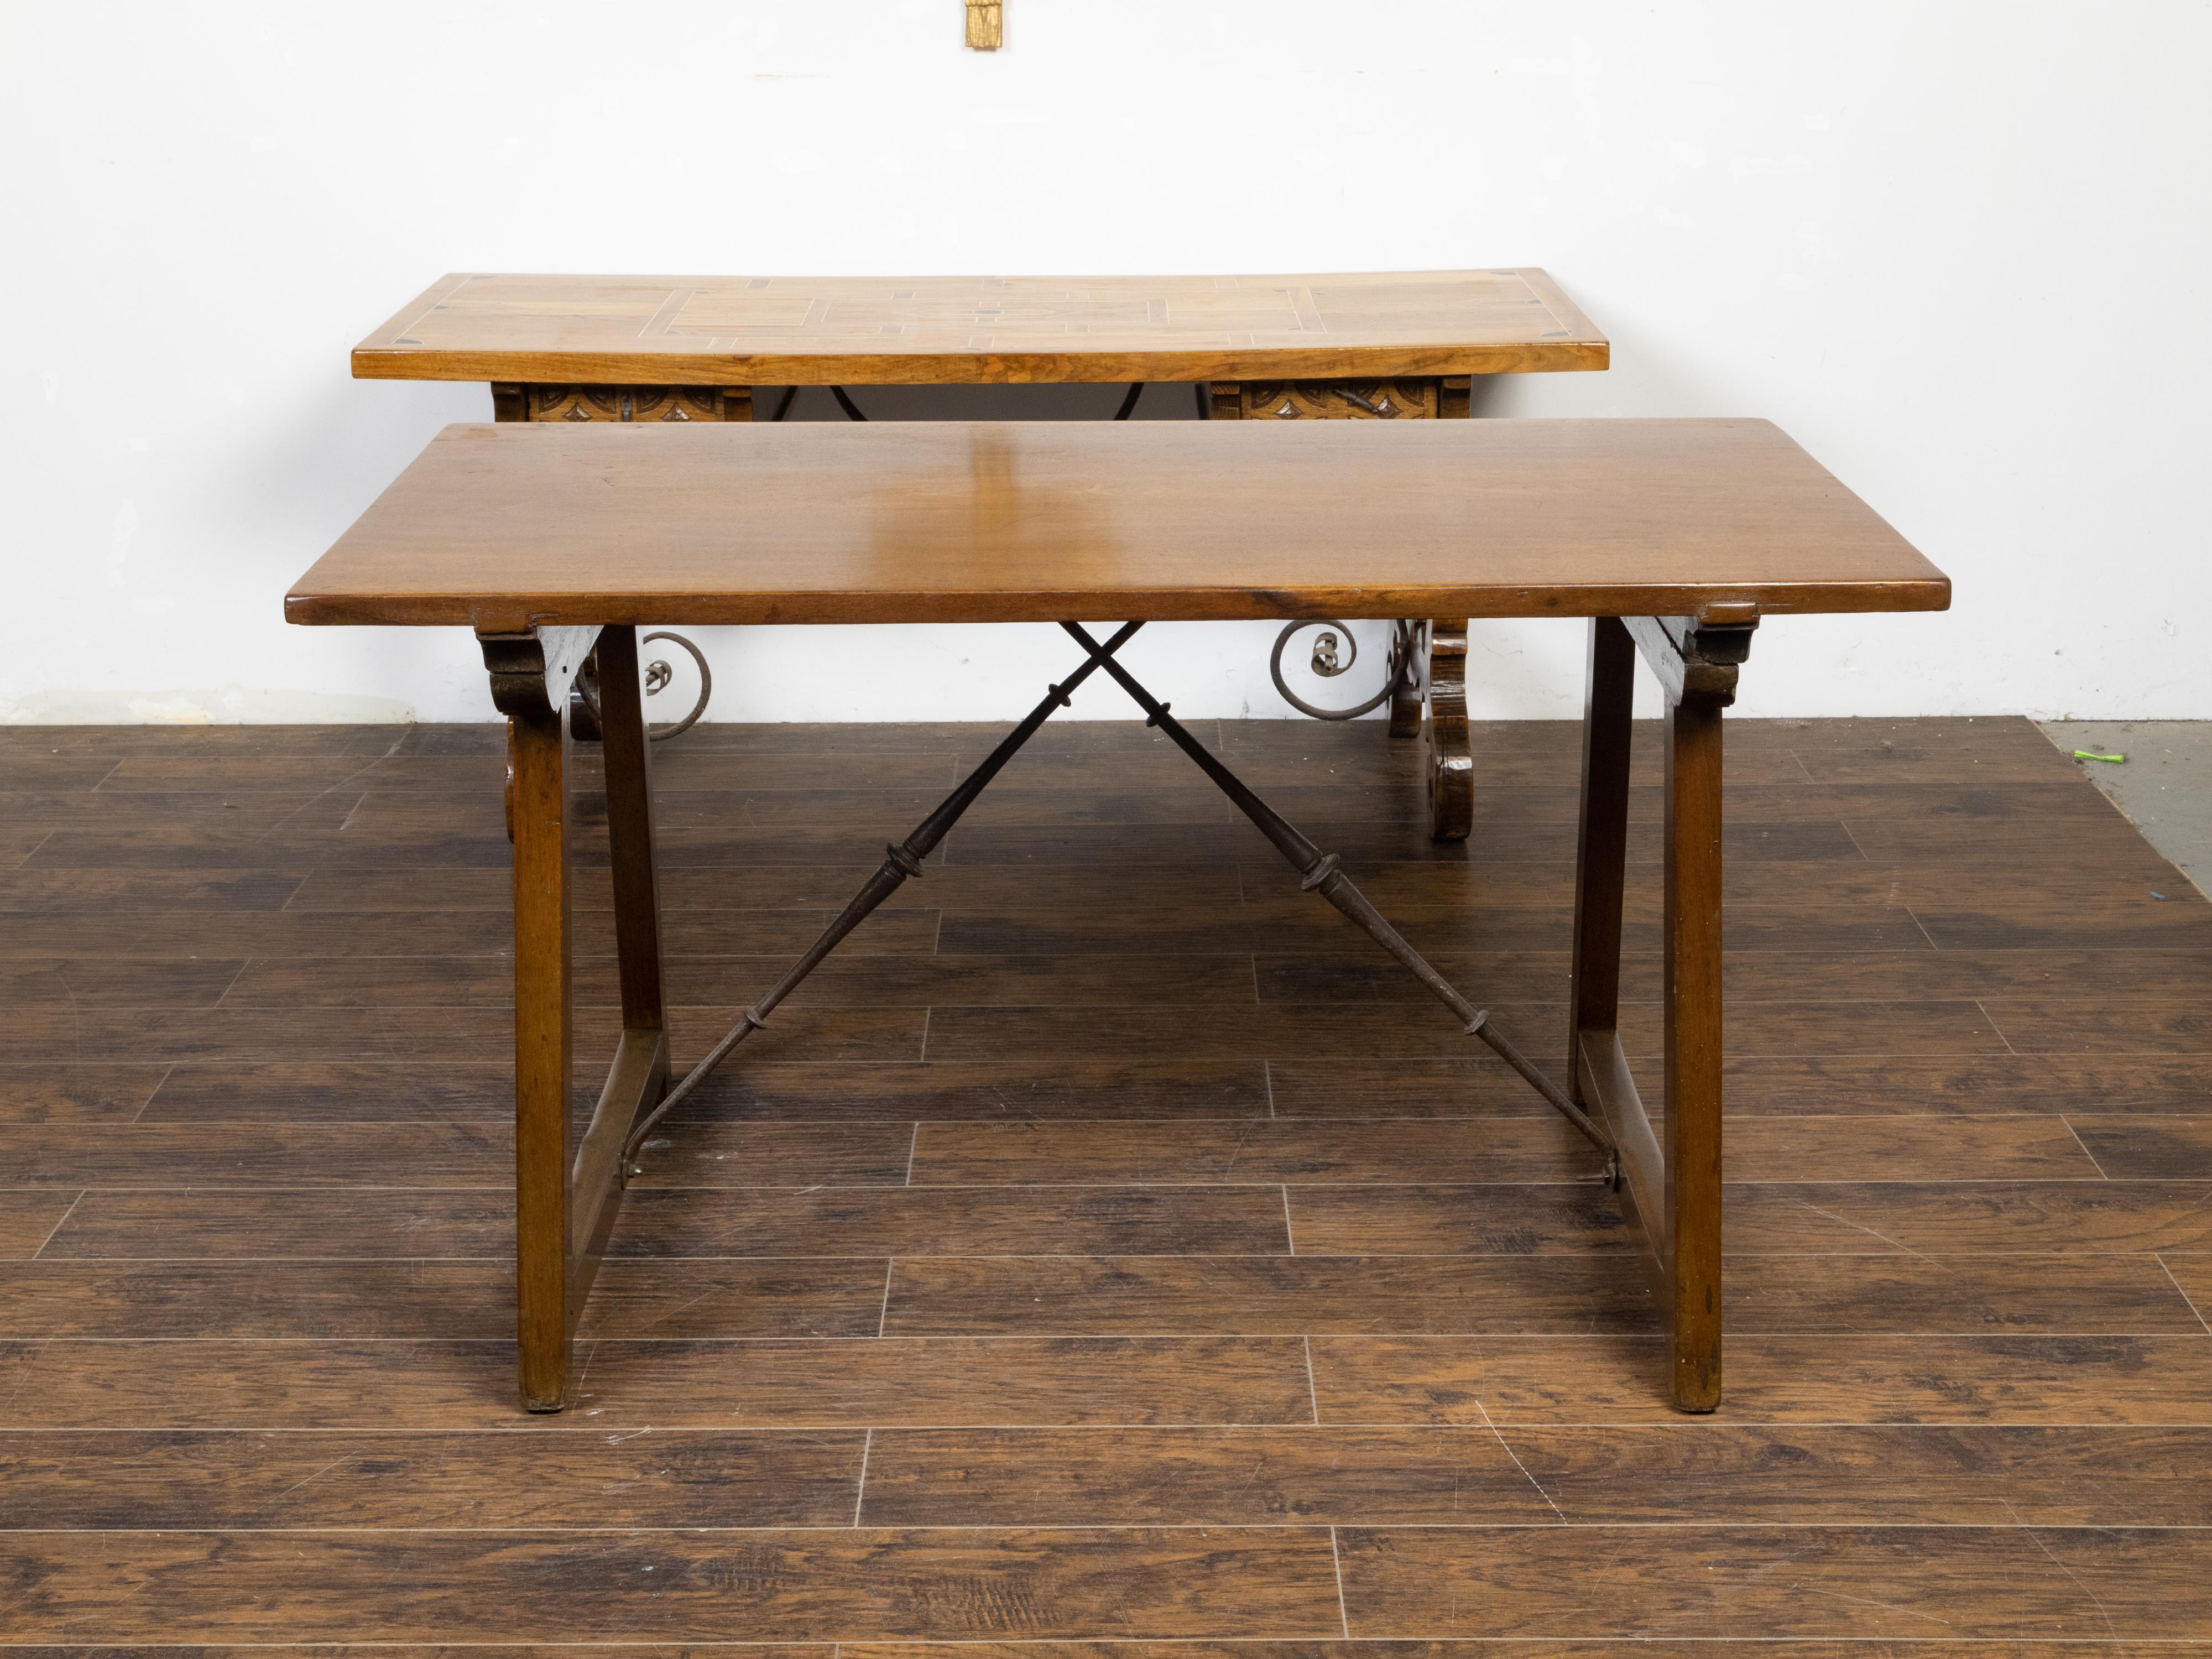 Französischer Konsolentisch aus Nussbaumholz aus dem 19. Jahrhundert, mit Bocksockel und Eisenträgern. Dieser Tisch aus Nussbaumholz, der im 19. Jahrhundert in Frankreich hergestellt wurde, hat eine rechteckige Platte, die auf einem Gestell aus